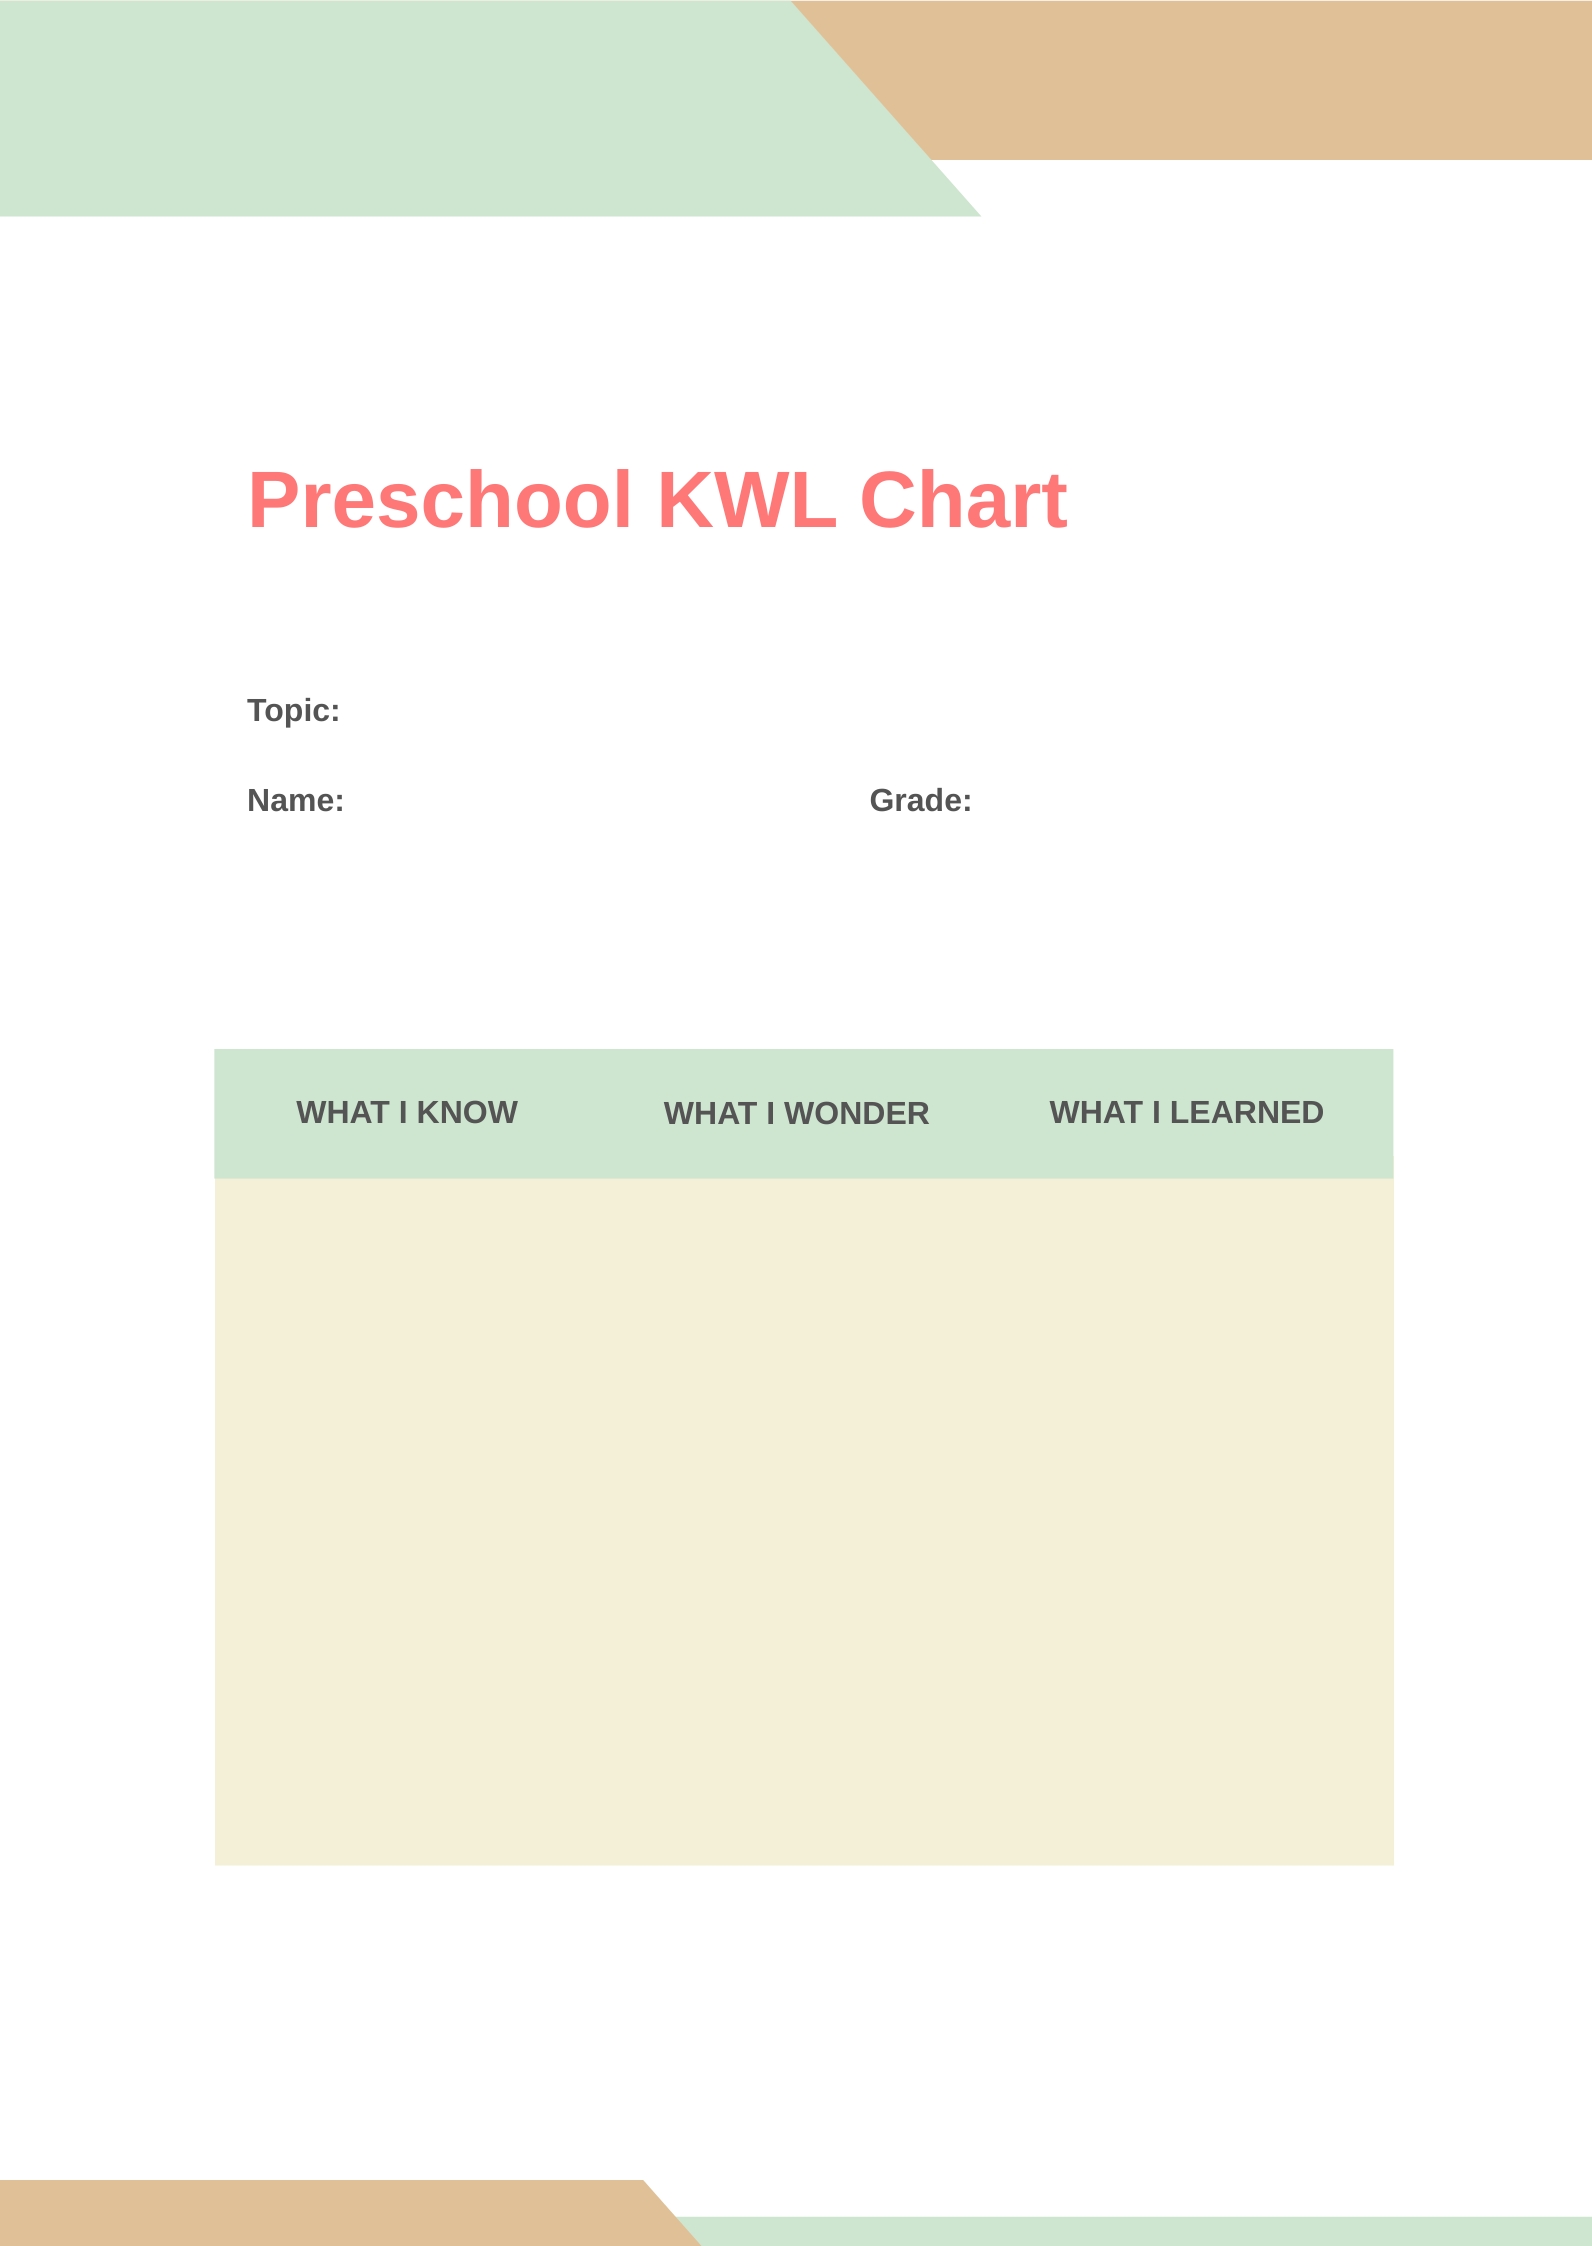 Preschool KWL Chart in PDF